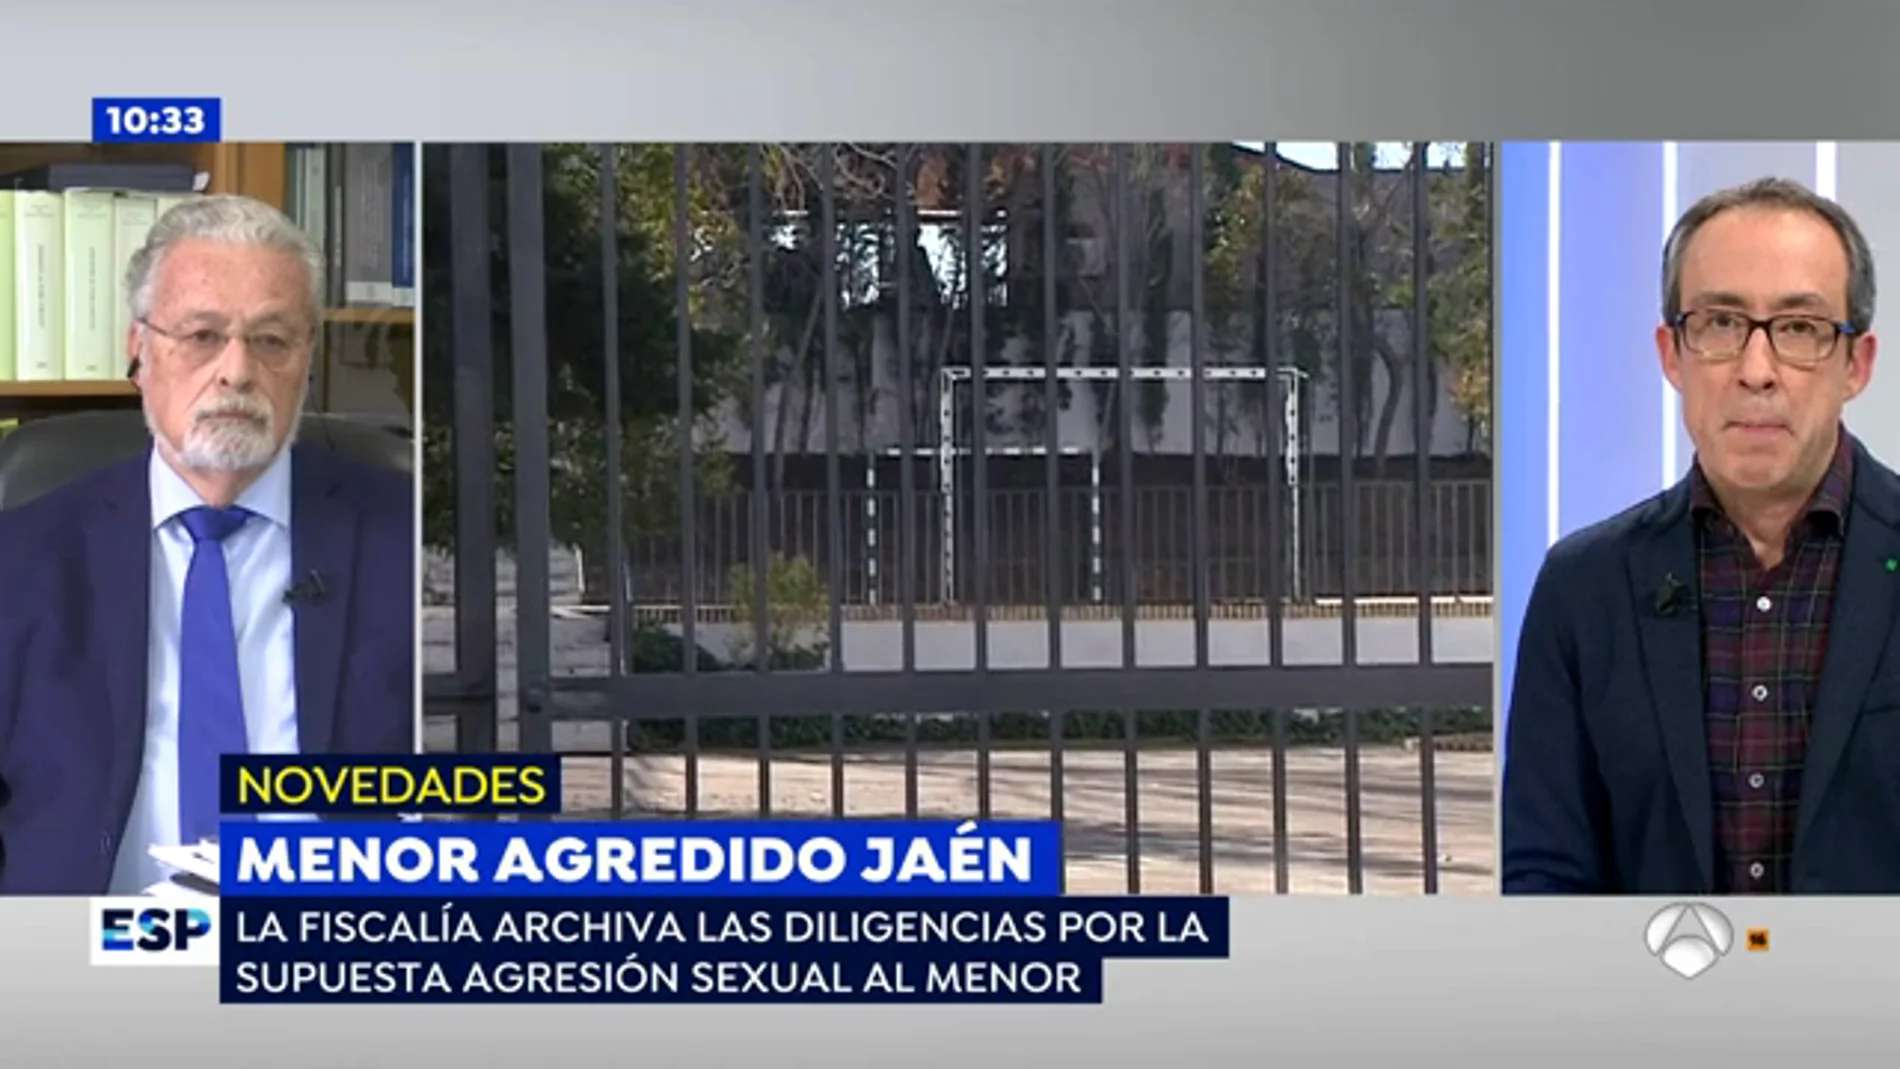 El defensor del pueblo andaluz apuesta por la reeducación social de los menores acusados en Jaén de abusar a otro del mismo colegio 